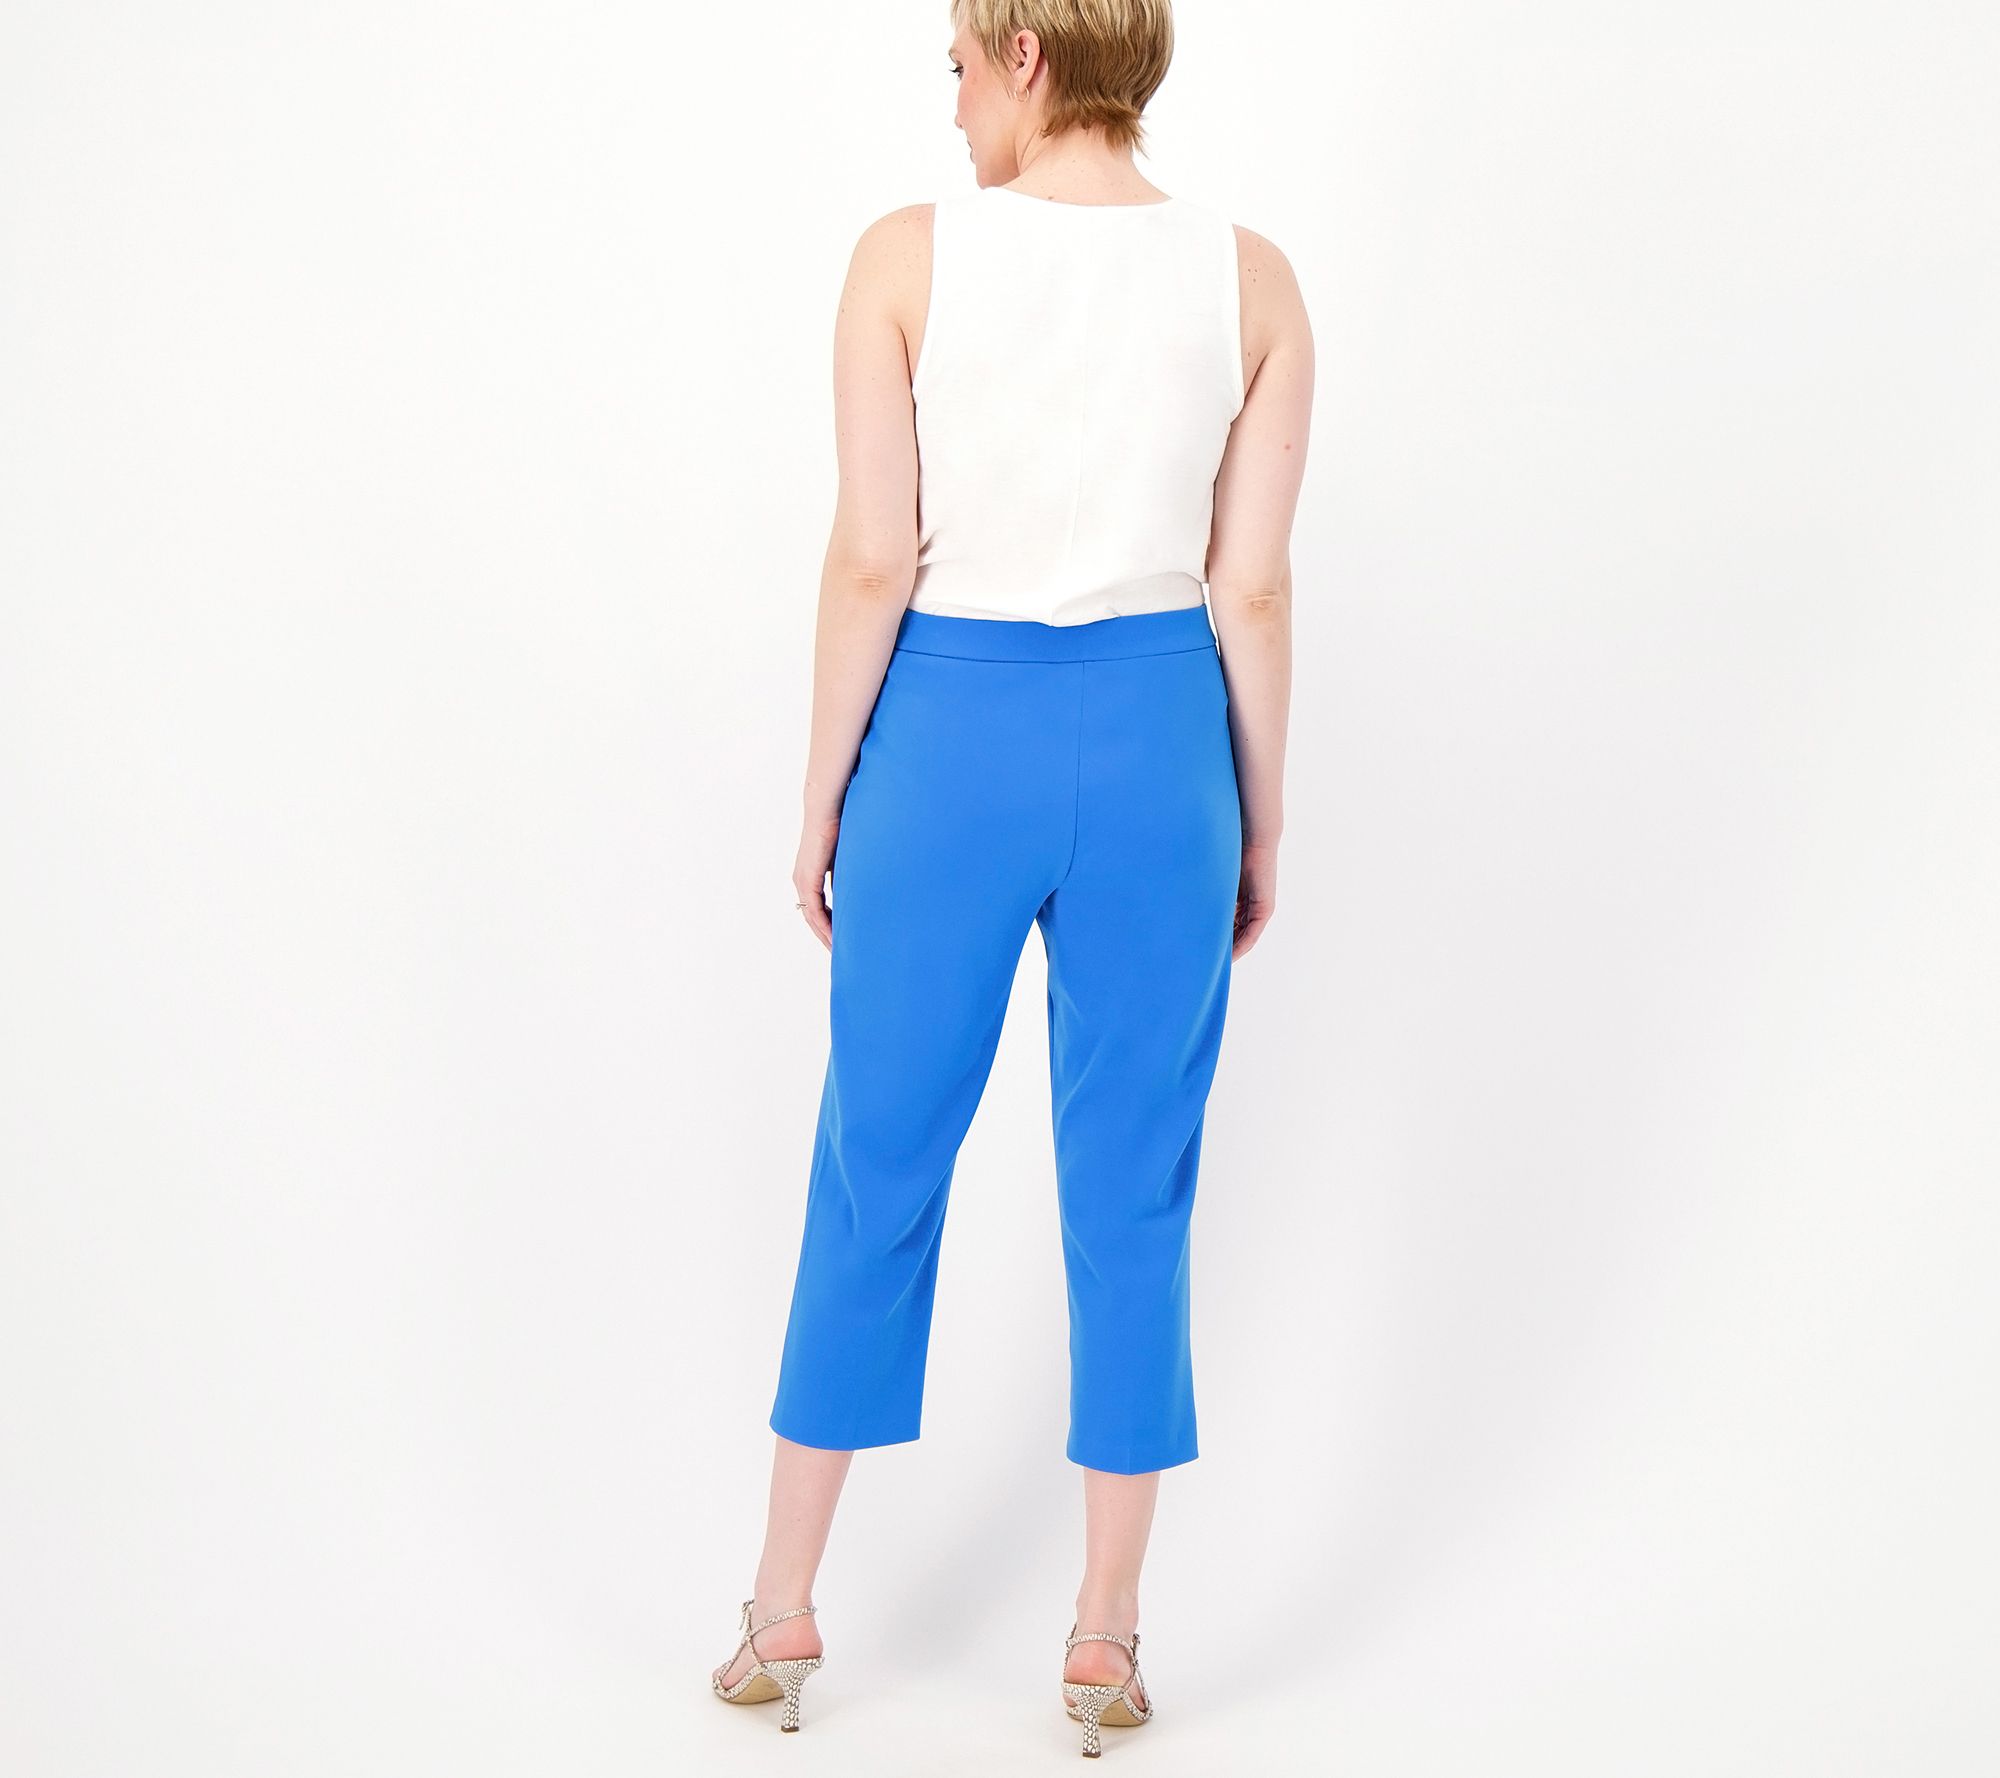 GRAVER Susan Graver Printed Regular LK Fusion Ava Slim Crop Pants